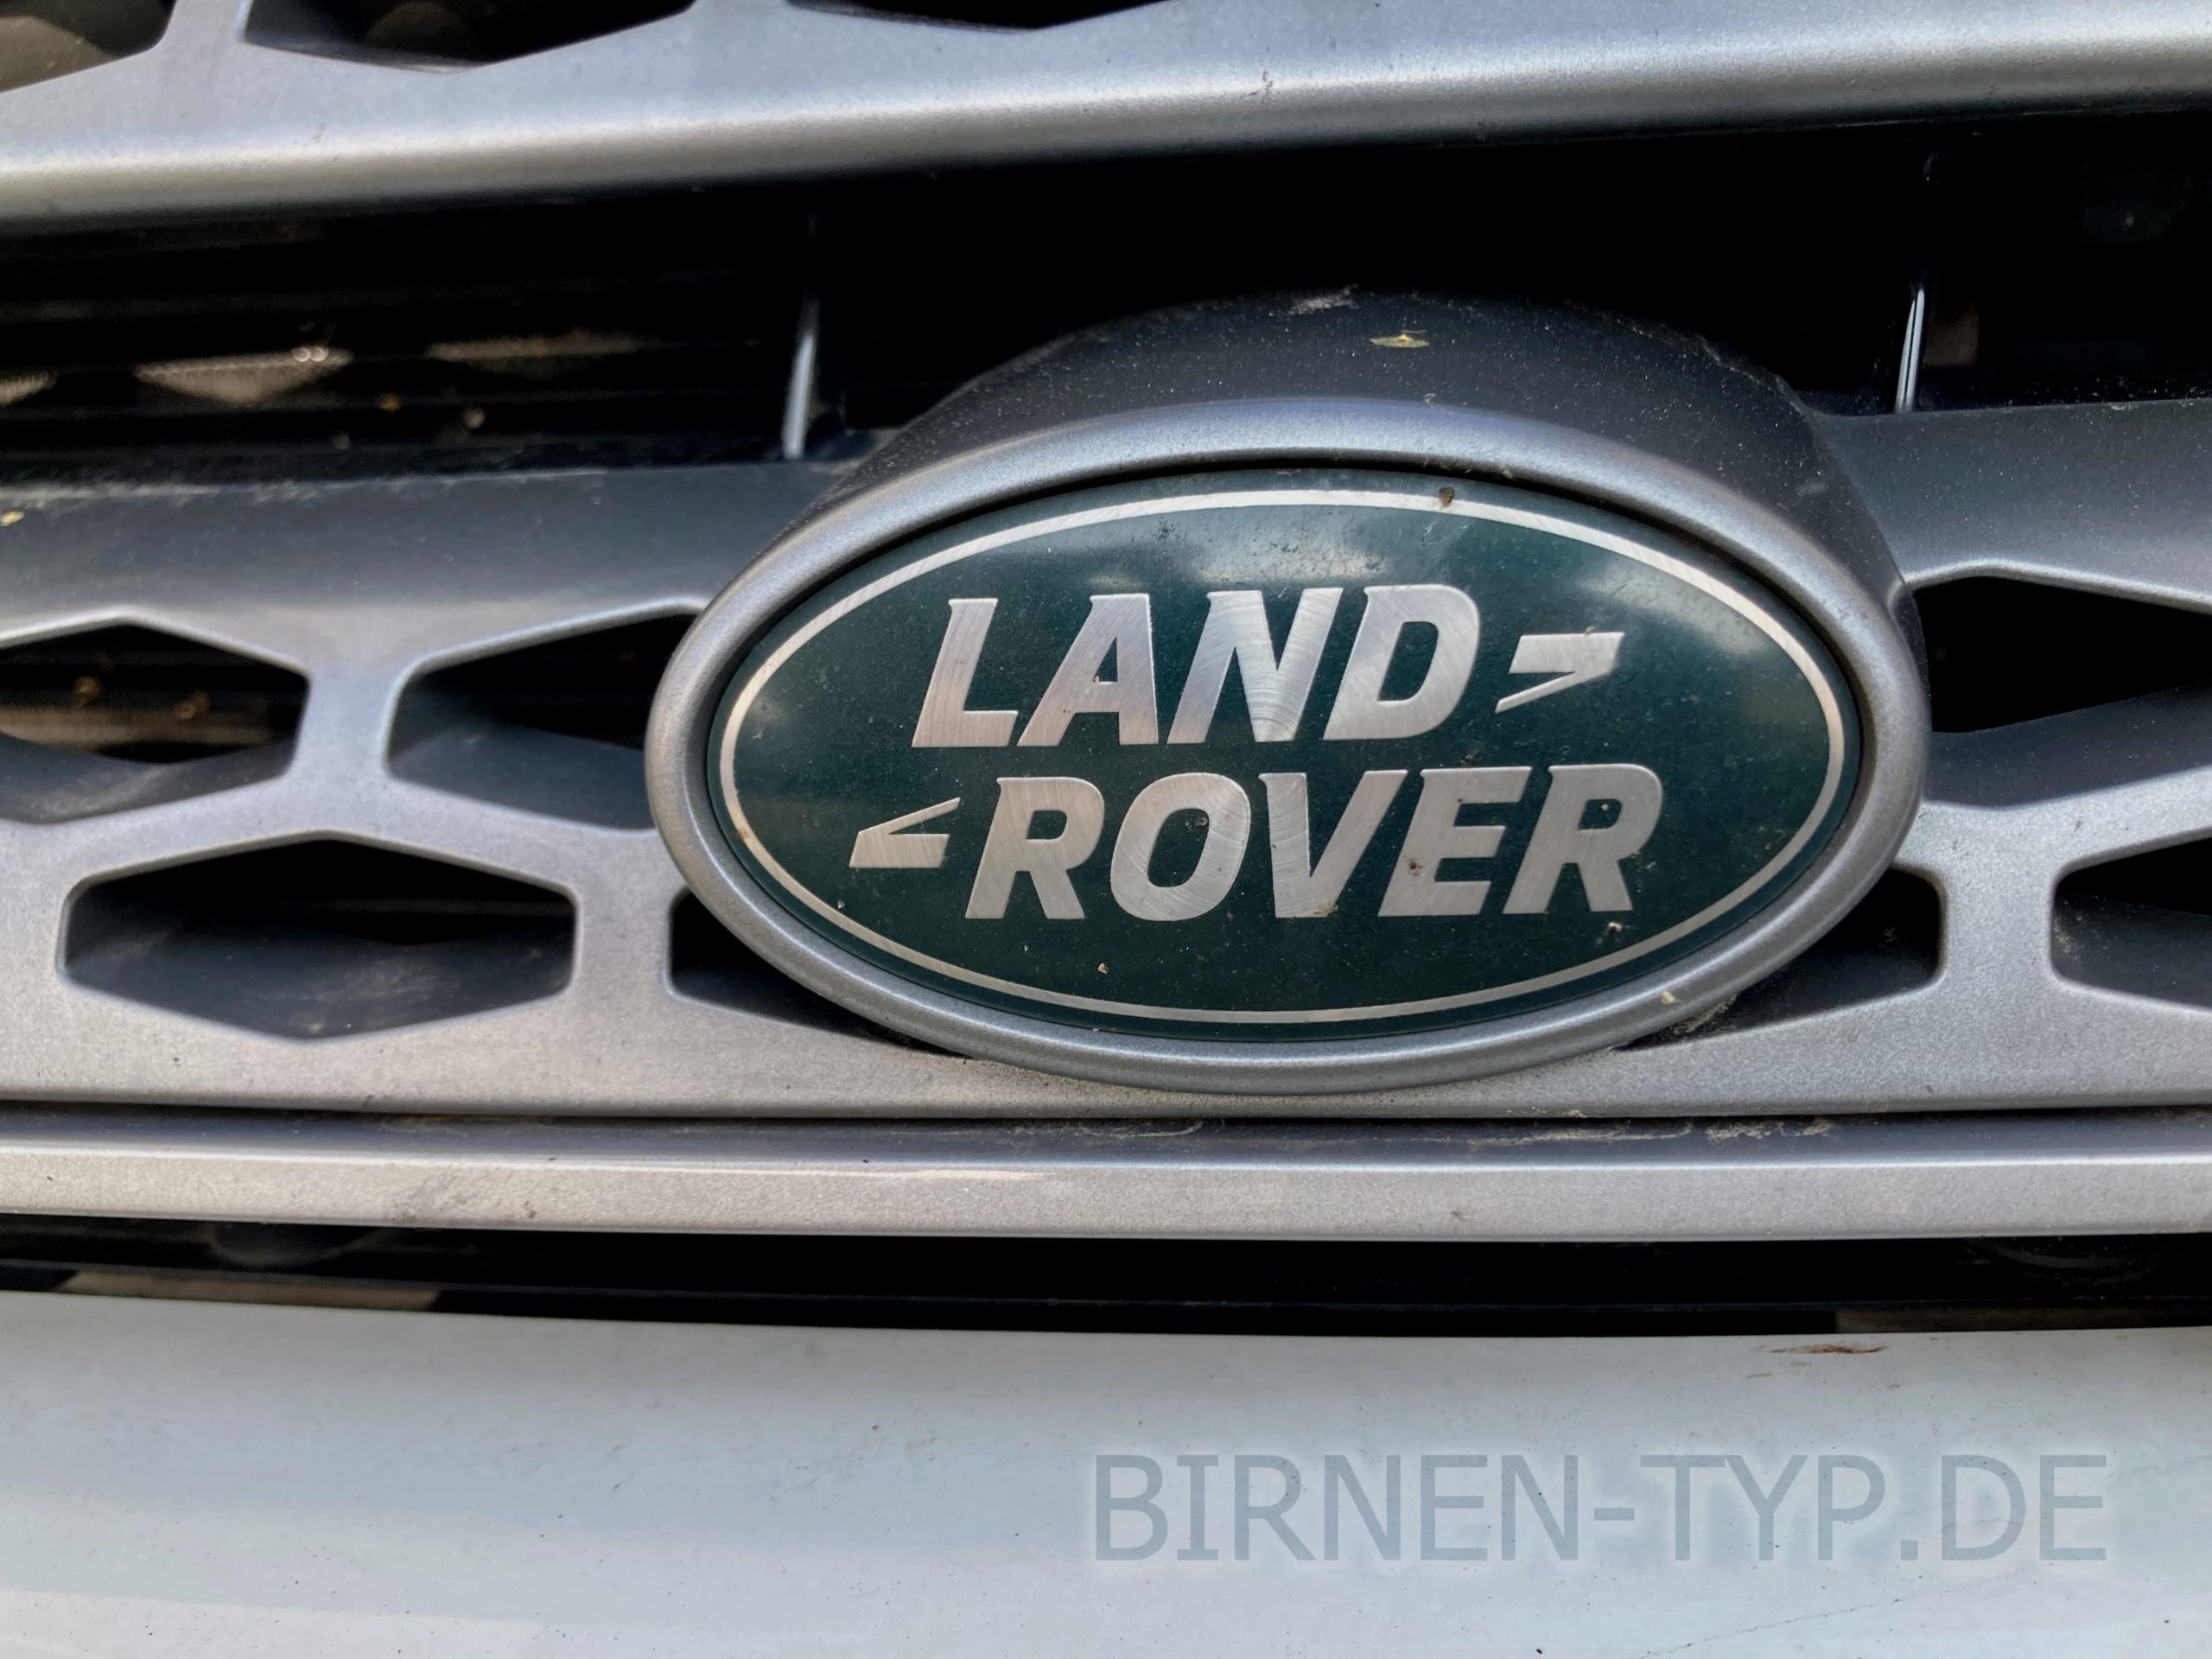 LED Kennzeichenbeleuchtung für Land Rover Defender günstig bestellen